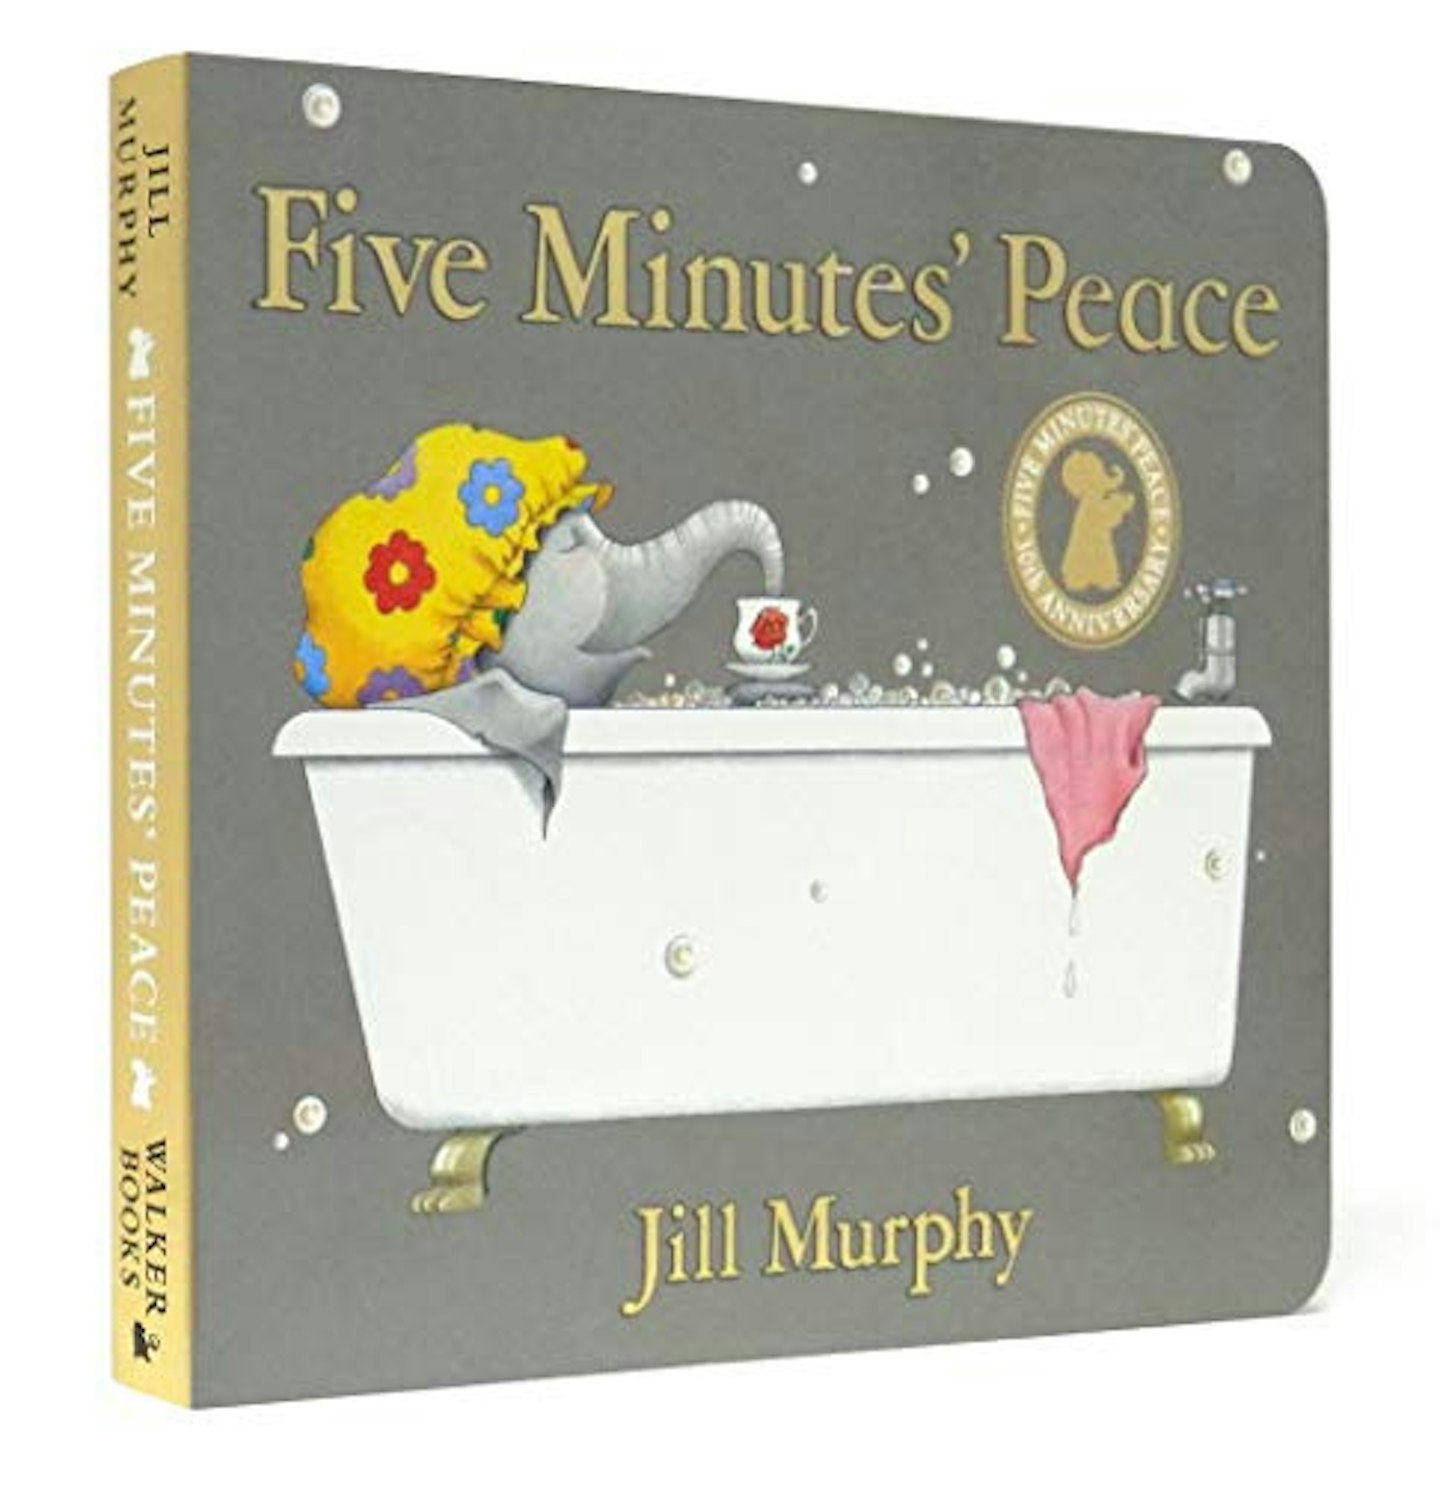 Five Minutesu0026#039; Peace